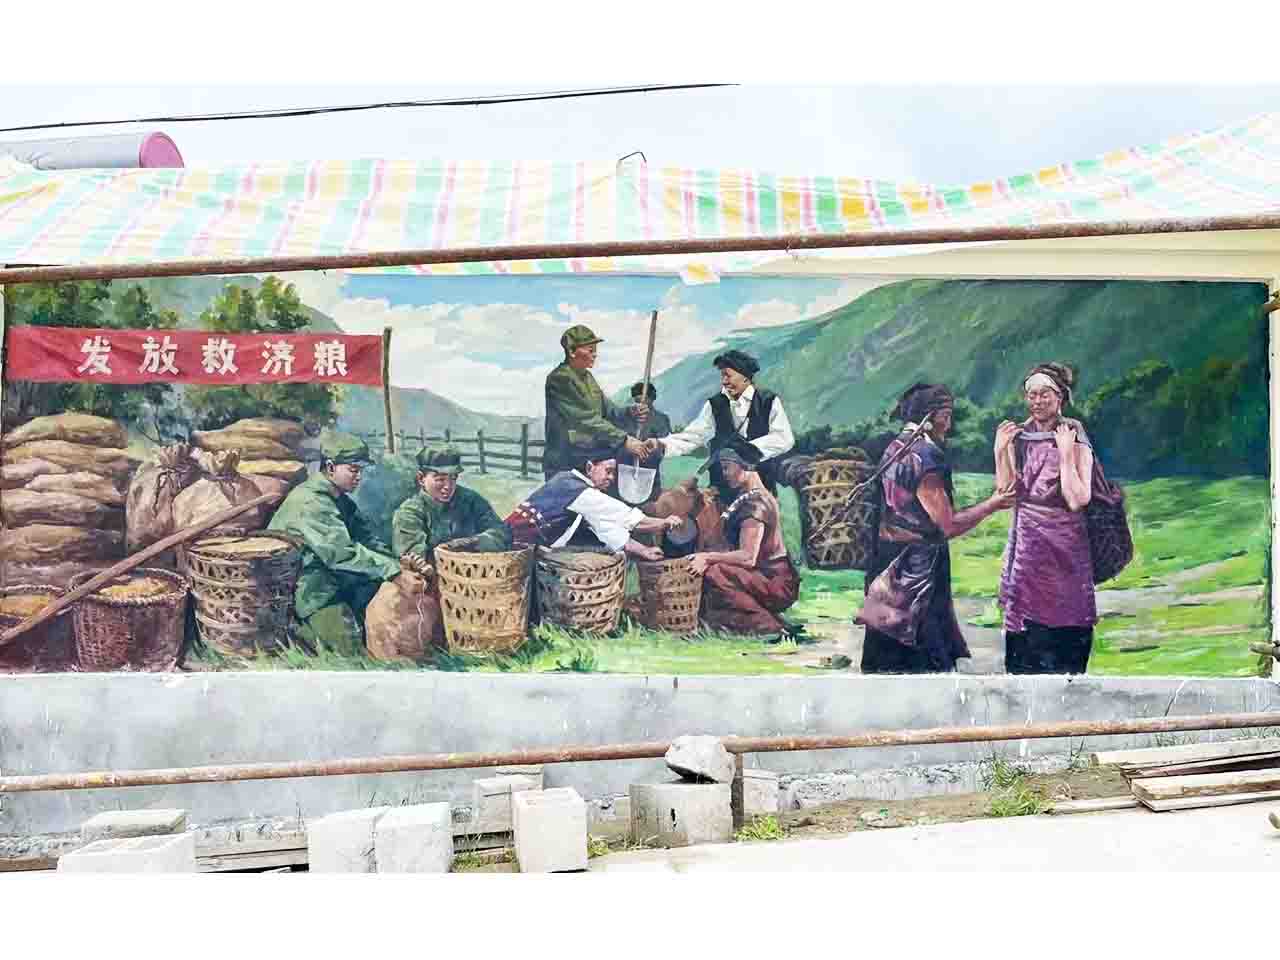 景区乡村写实发放救济粮少数民族人物风景墙绘壁画彩绘涂鸦手绘成都澜泉文化